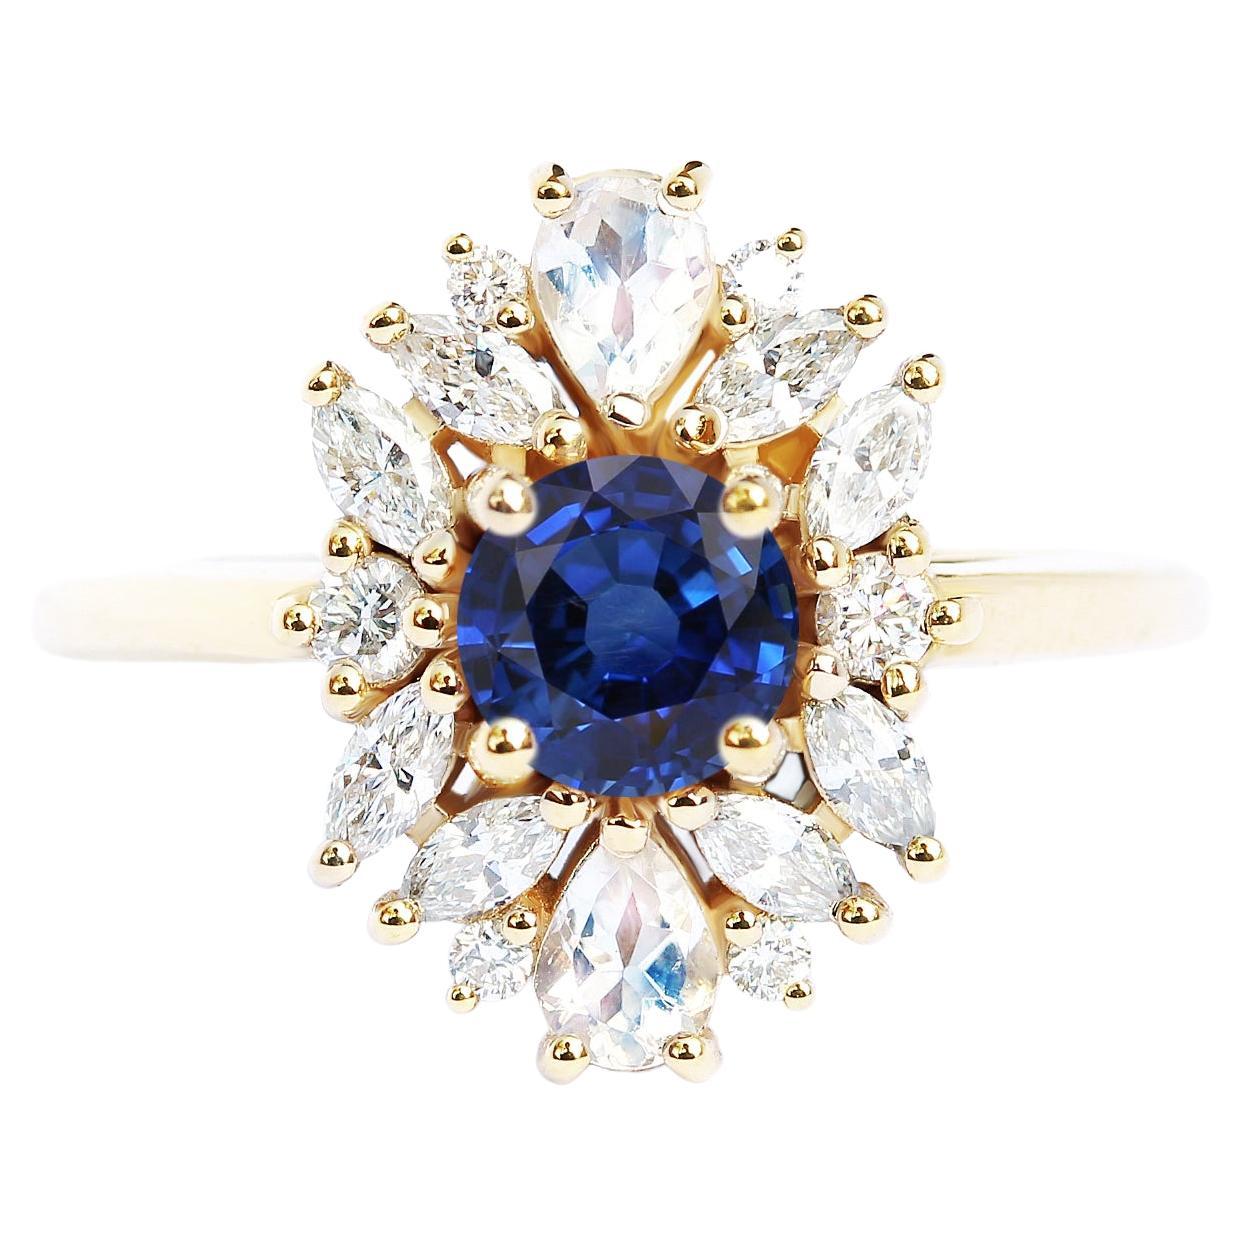 Blue Sapphire Cluster Unique Engagement Ring, Alternative Bride "Odisea"